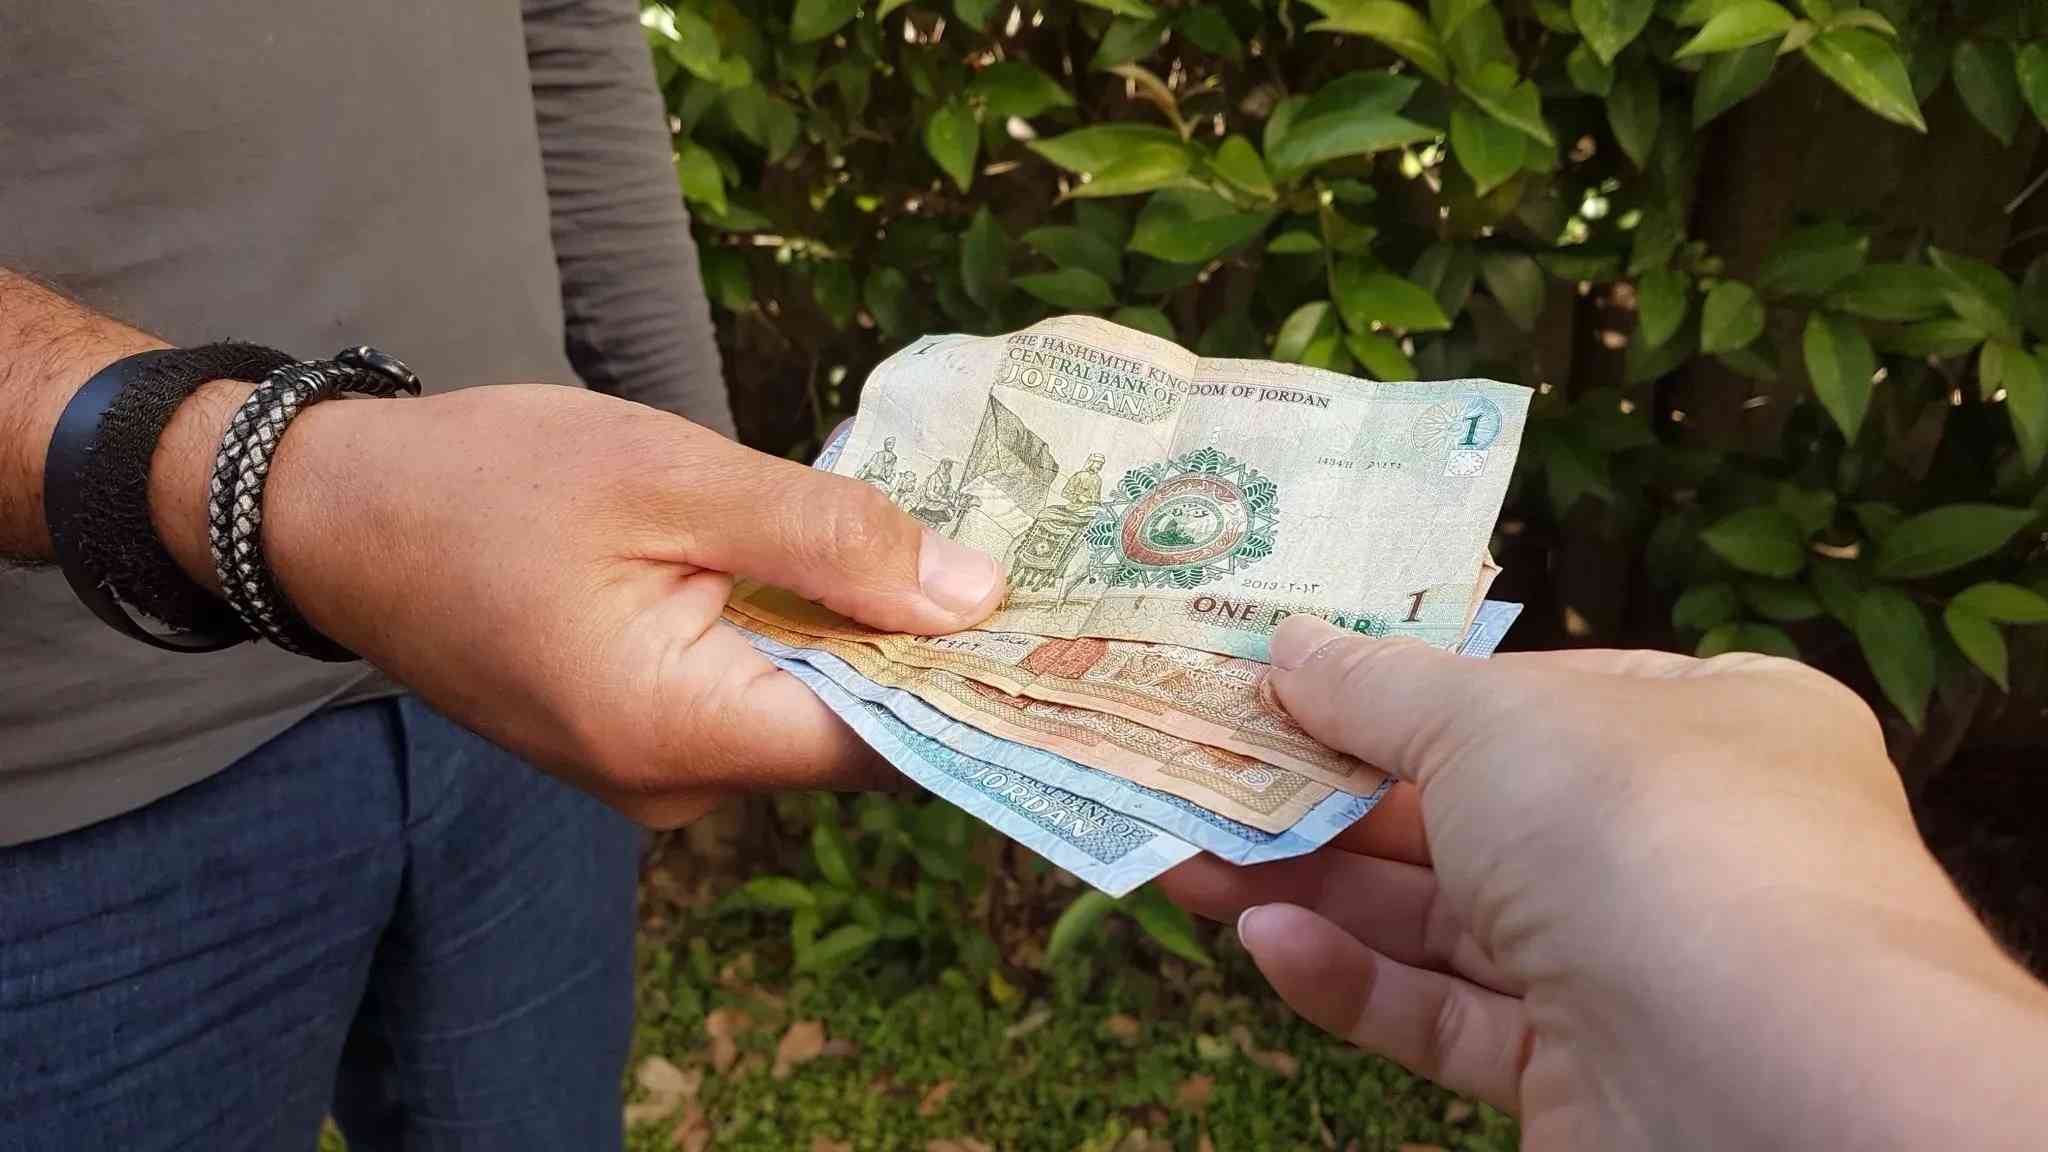 الحكومة تنشر أسماء مئات الأردنيين في ذمتهم أموال (أسماء)